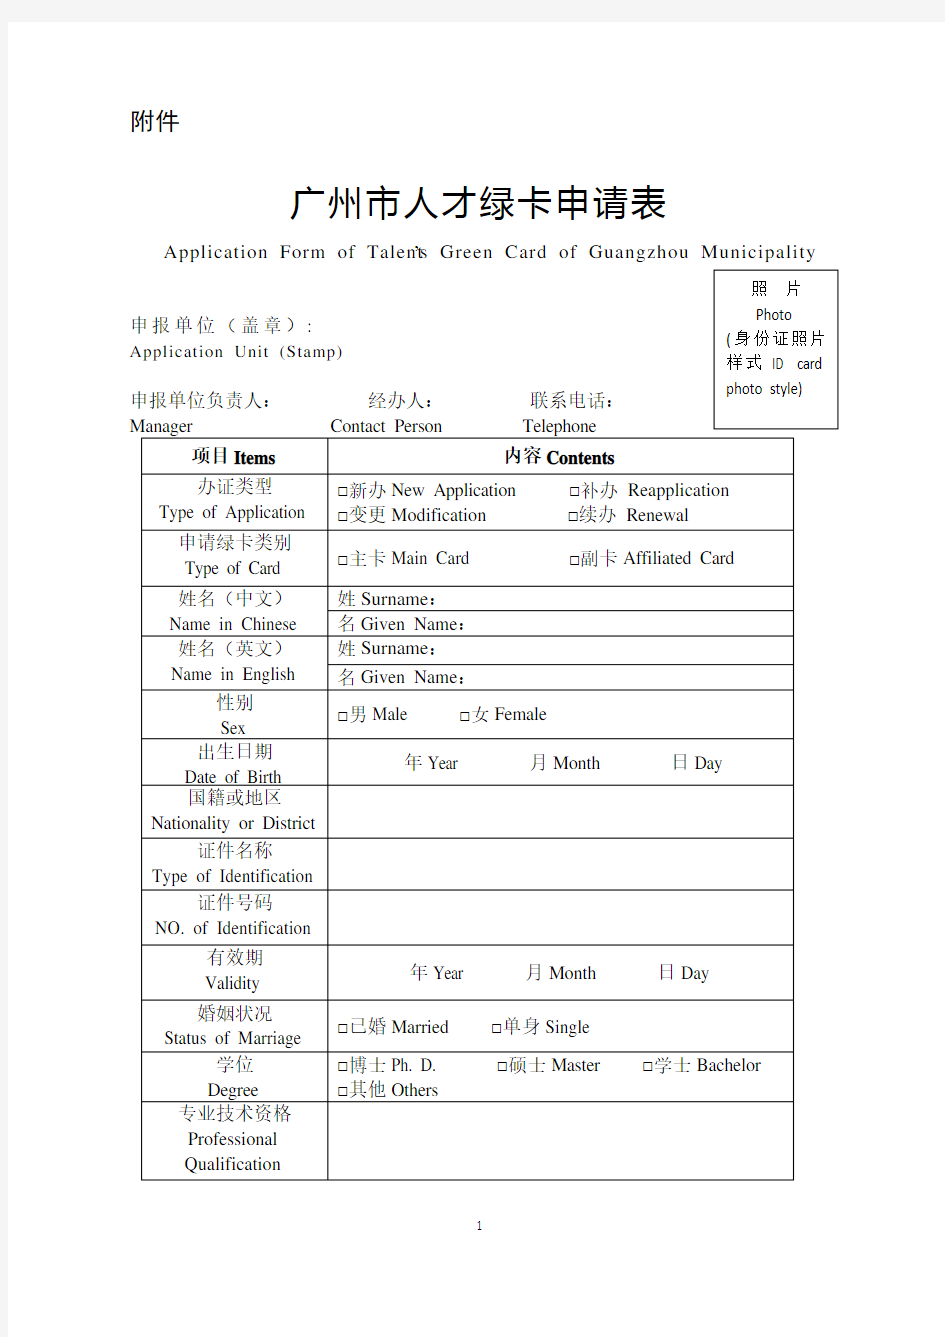 广州市人才绿卡申请表(可下载打印)